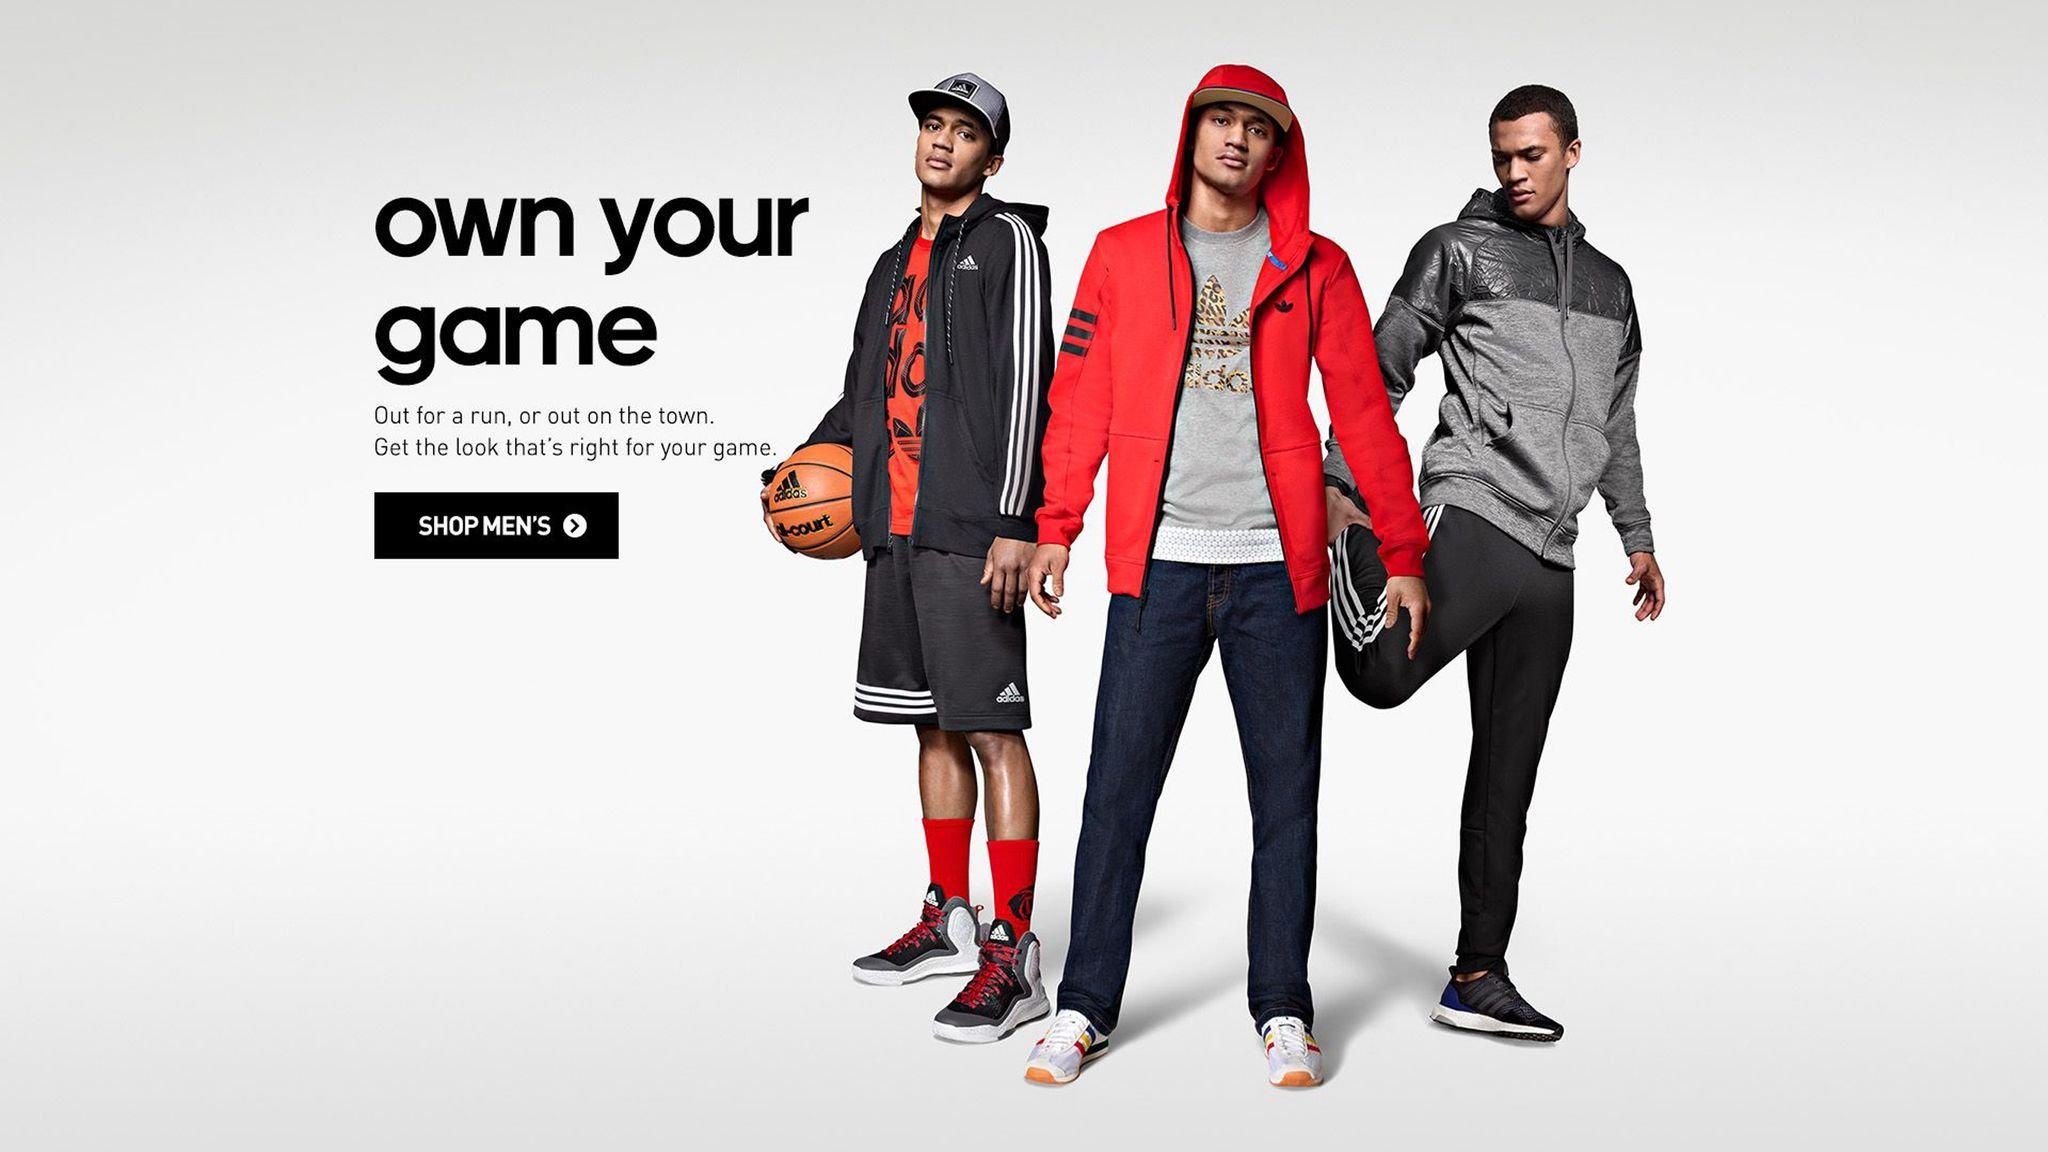 Интернет спортивный сайты одежды. Реклама мужской спортивной одежды. Спортивная одежда мужская. Магазин спортивной одежды реклама. Реклама одежды.